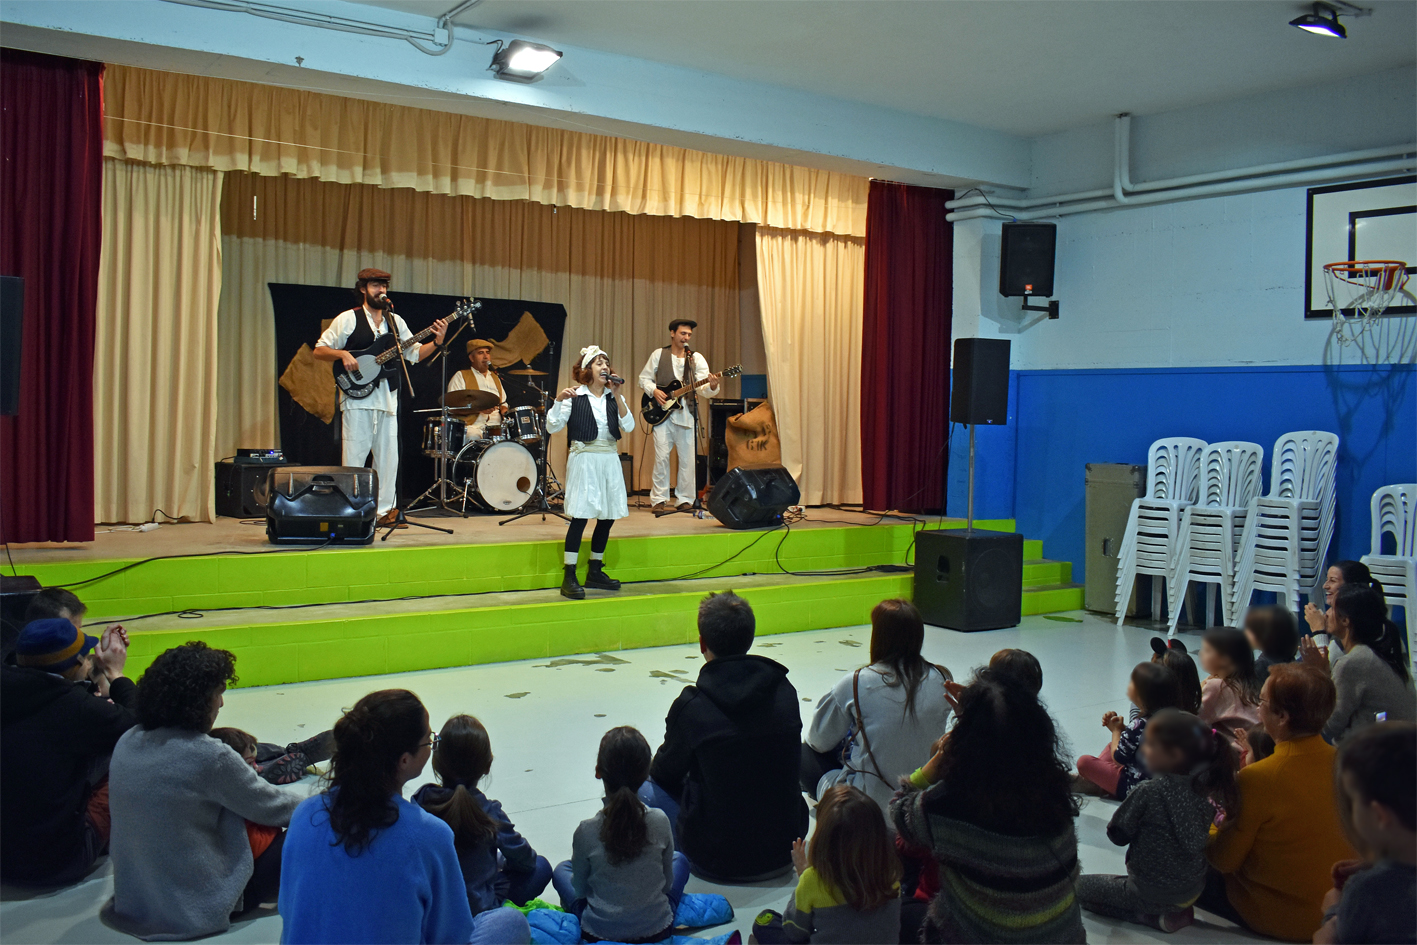 Espectacle infantil 'Pell de Gallina' de SAC Espectacles a l'Escola Francesc Macià, dins de la Festa de Sant Sebastià.